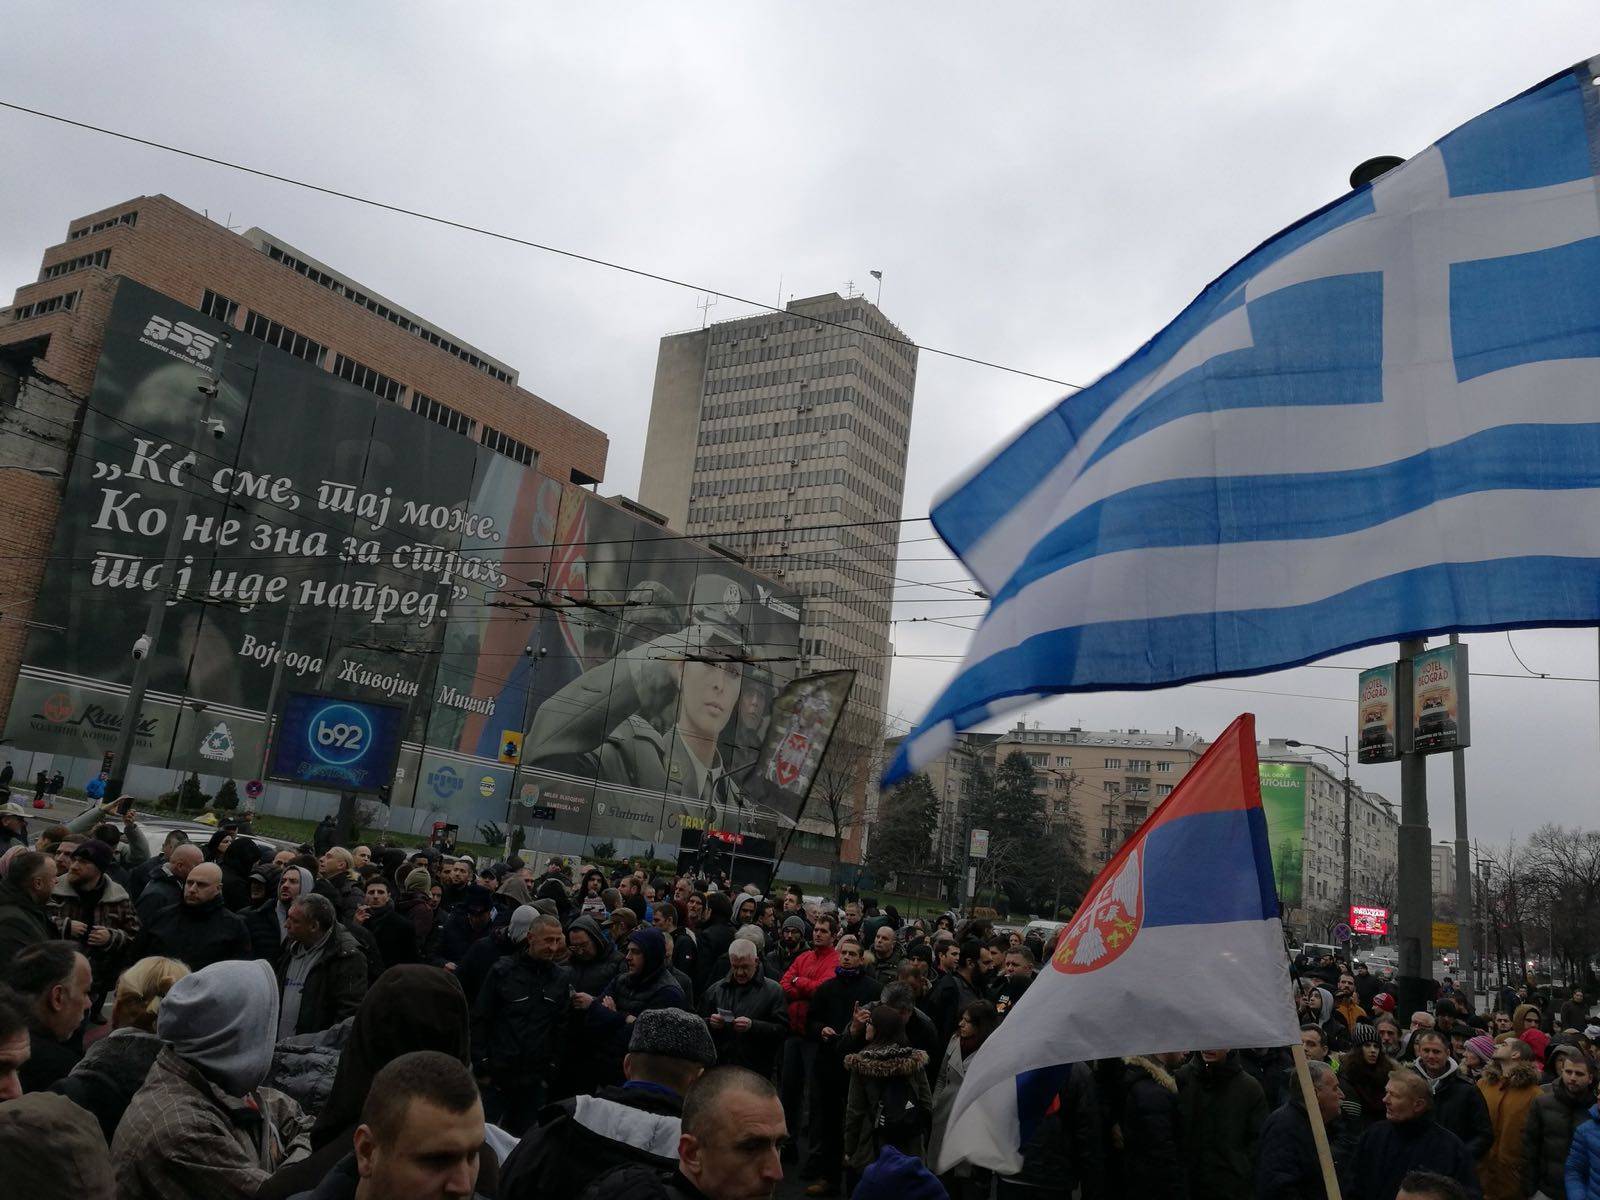 Οι Σέρβοι στο πλευρό των Ελλήνων-Πραγματοποίησαν διαδήλωση διαμαρτυρίας για την εισβολή των παράνομων μεταναστών στα σύνορα…(ΦΩΤΟ)